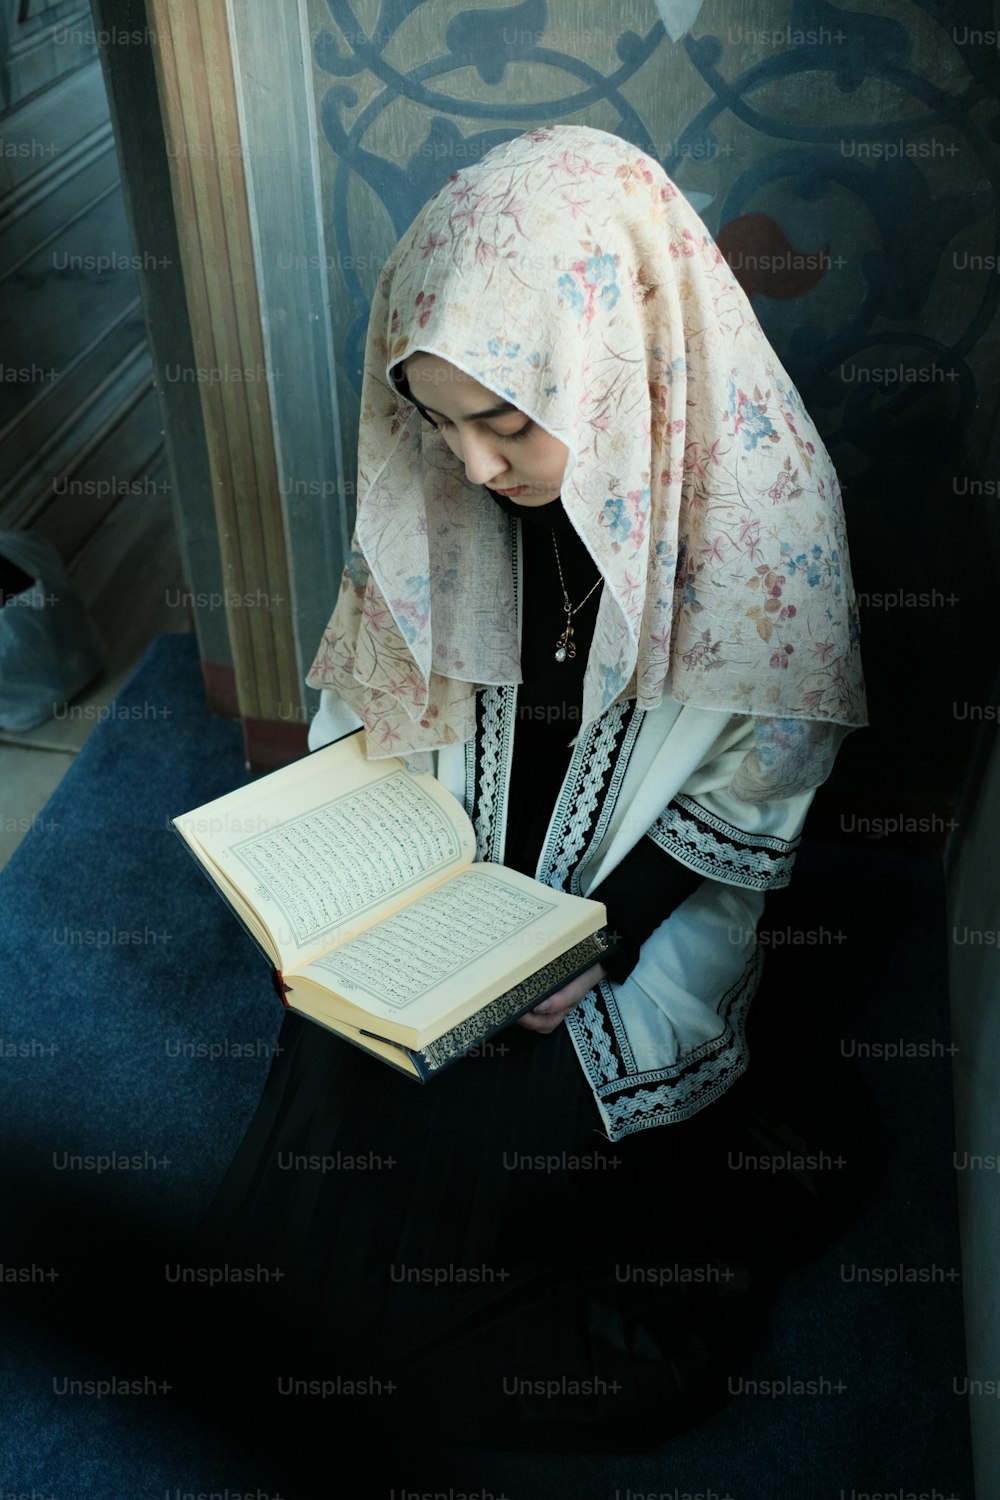 ヒジャーブを着た女性が本を読んでいる